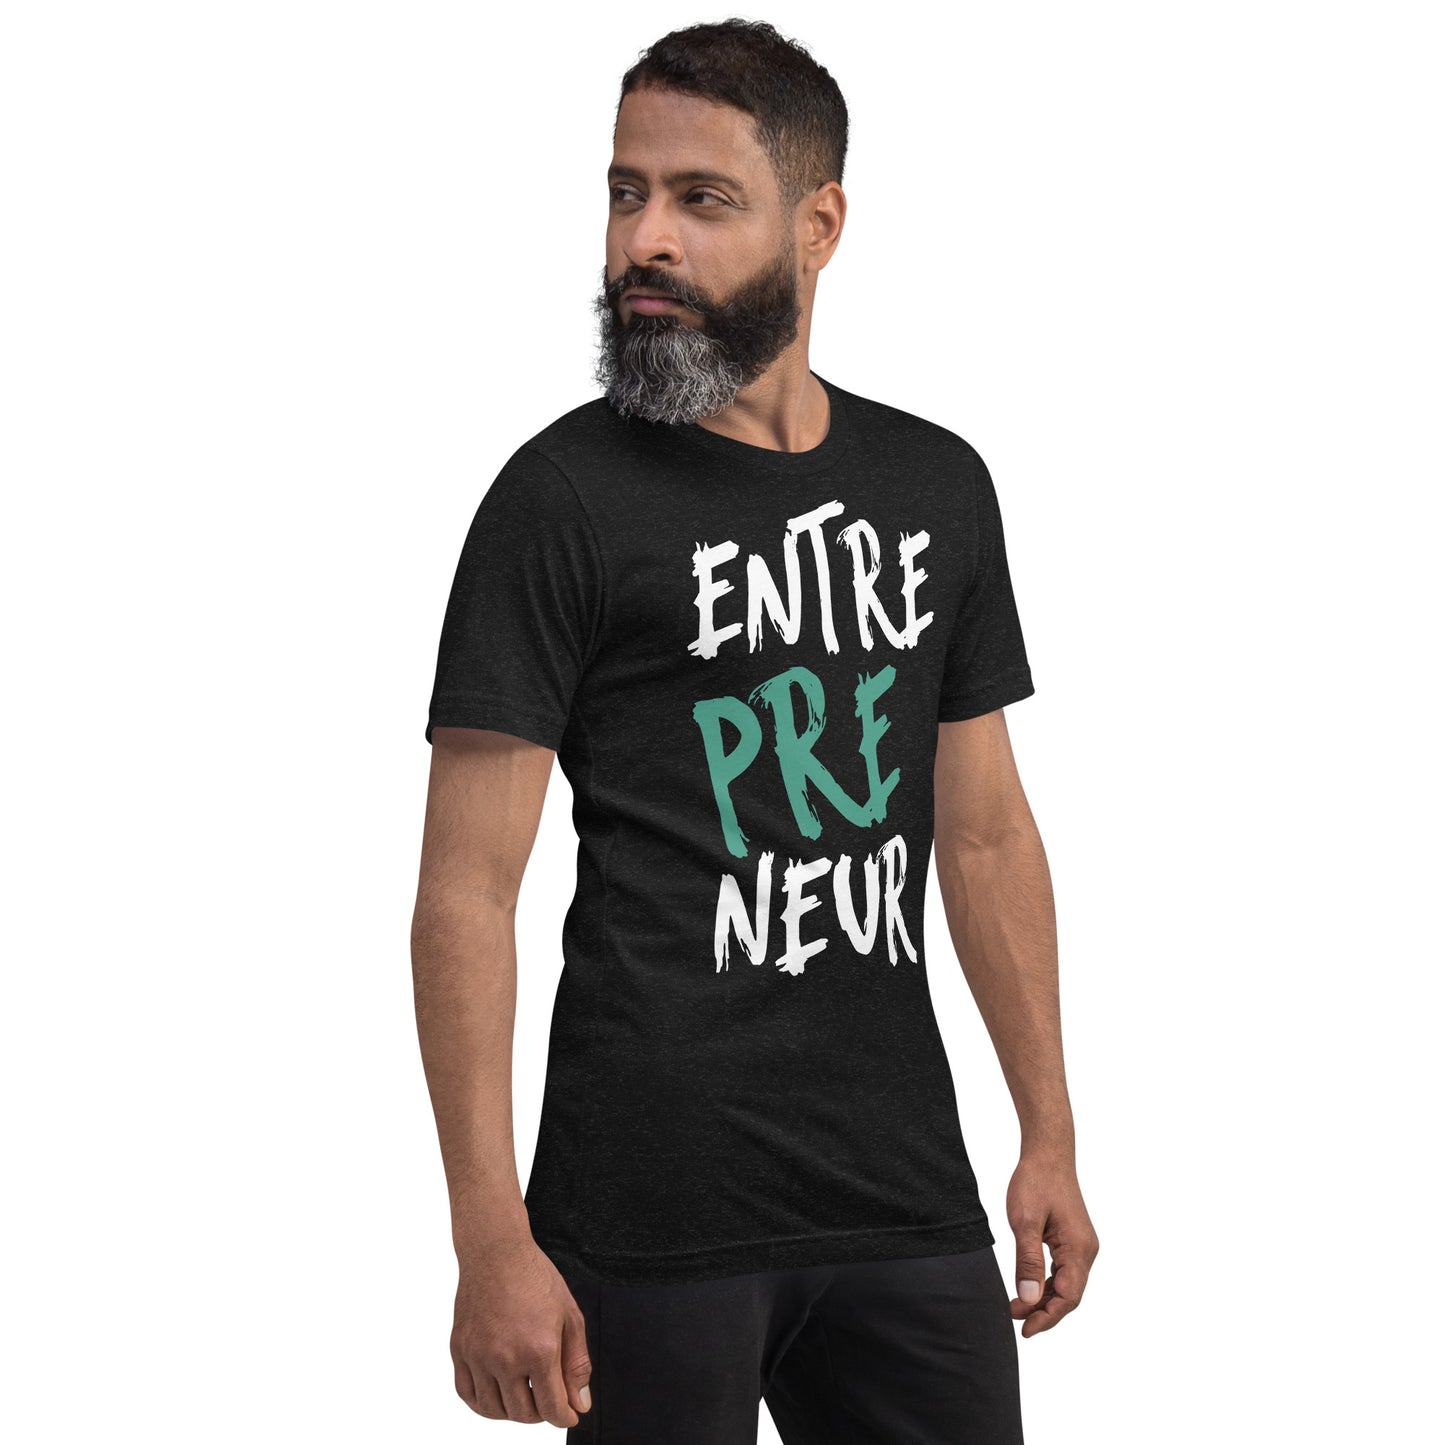 Entrepreneur - Unisex t-shirt